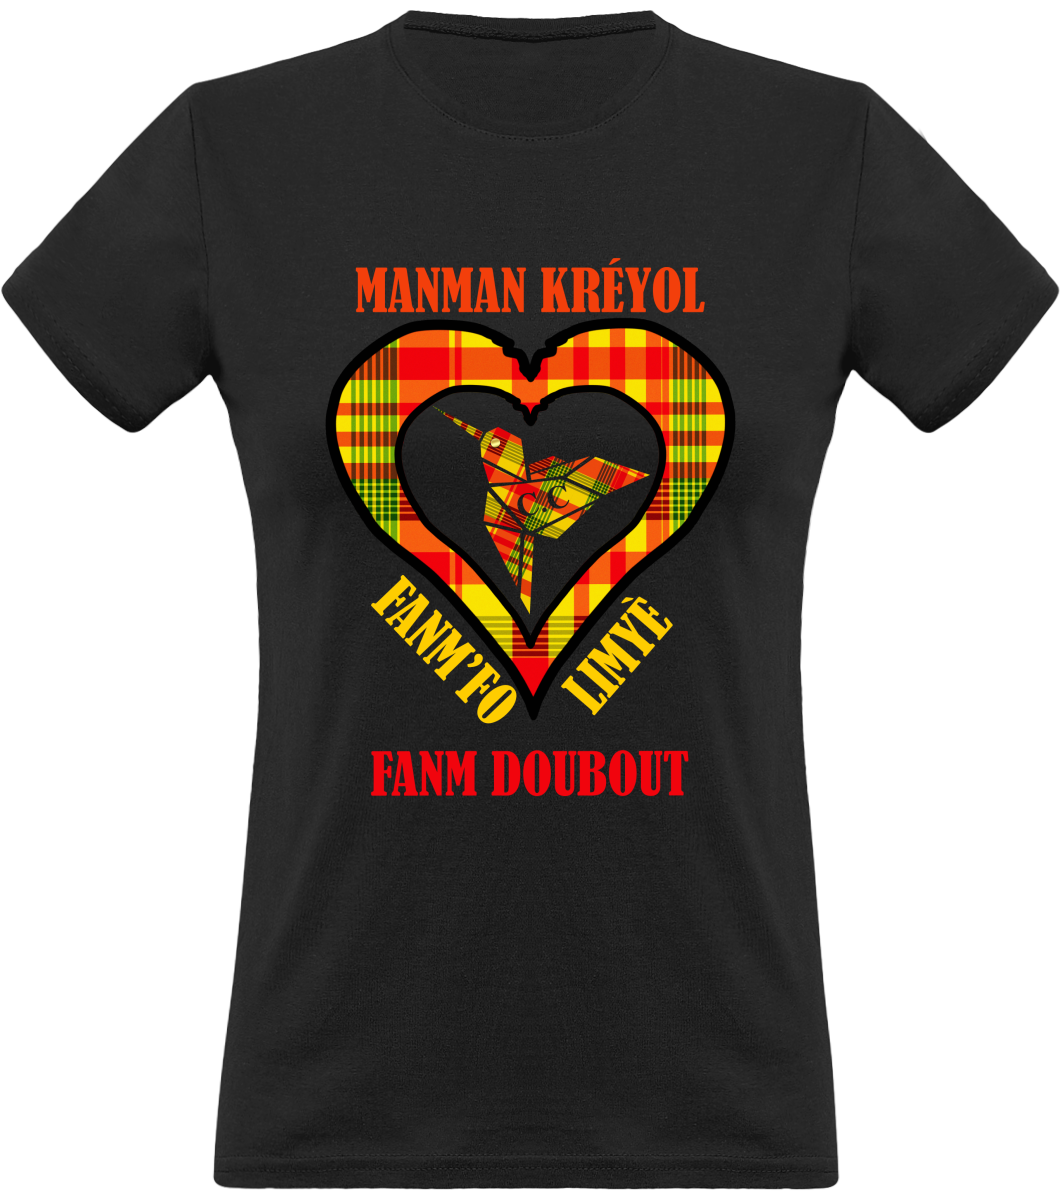 Colibri Madras Jon/Sunshine T-shirt Manman  Kréyol Fanm  fo